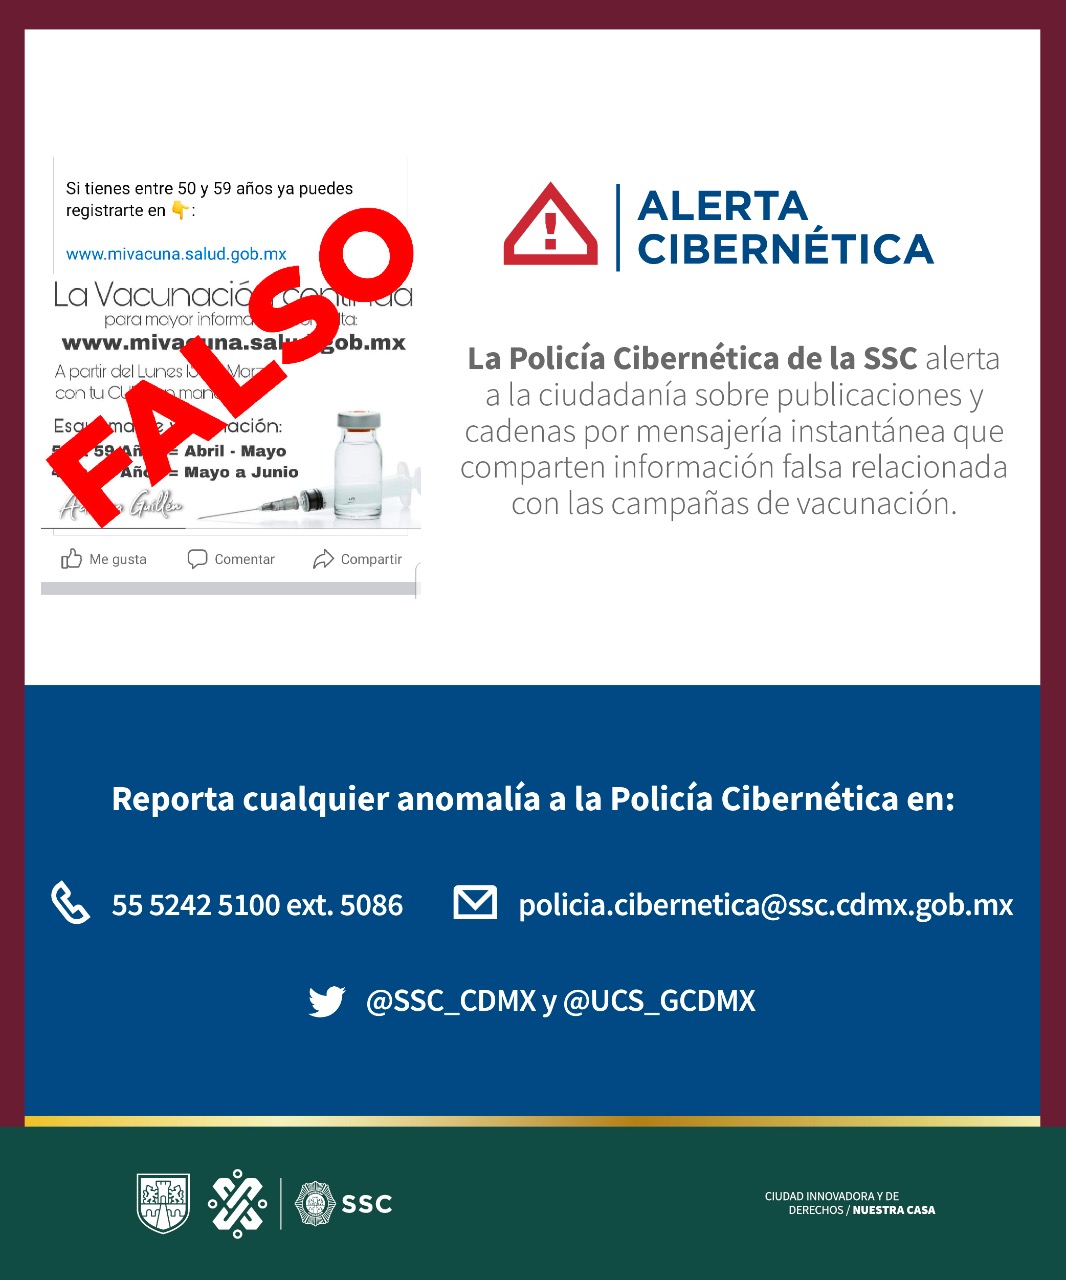 La policía cibernética de la SSC alerta a la ciudadanía sobre fake news relacionadas con las campañas de vacunación